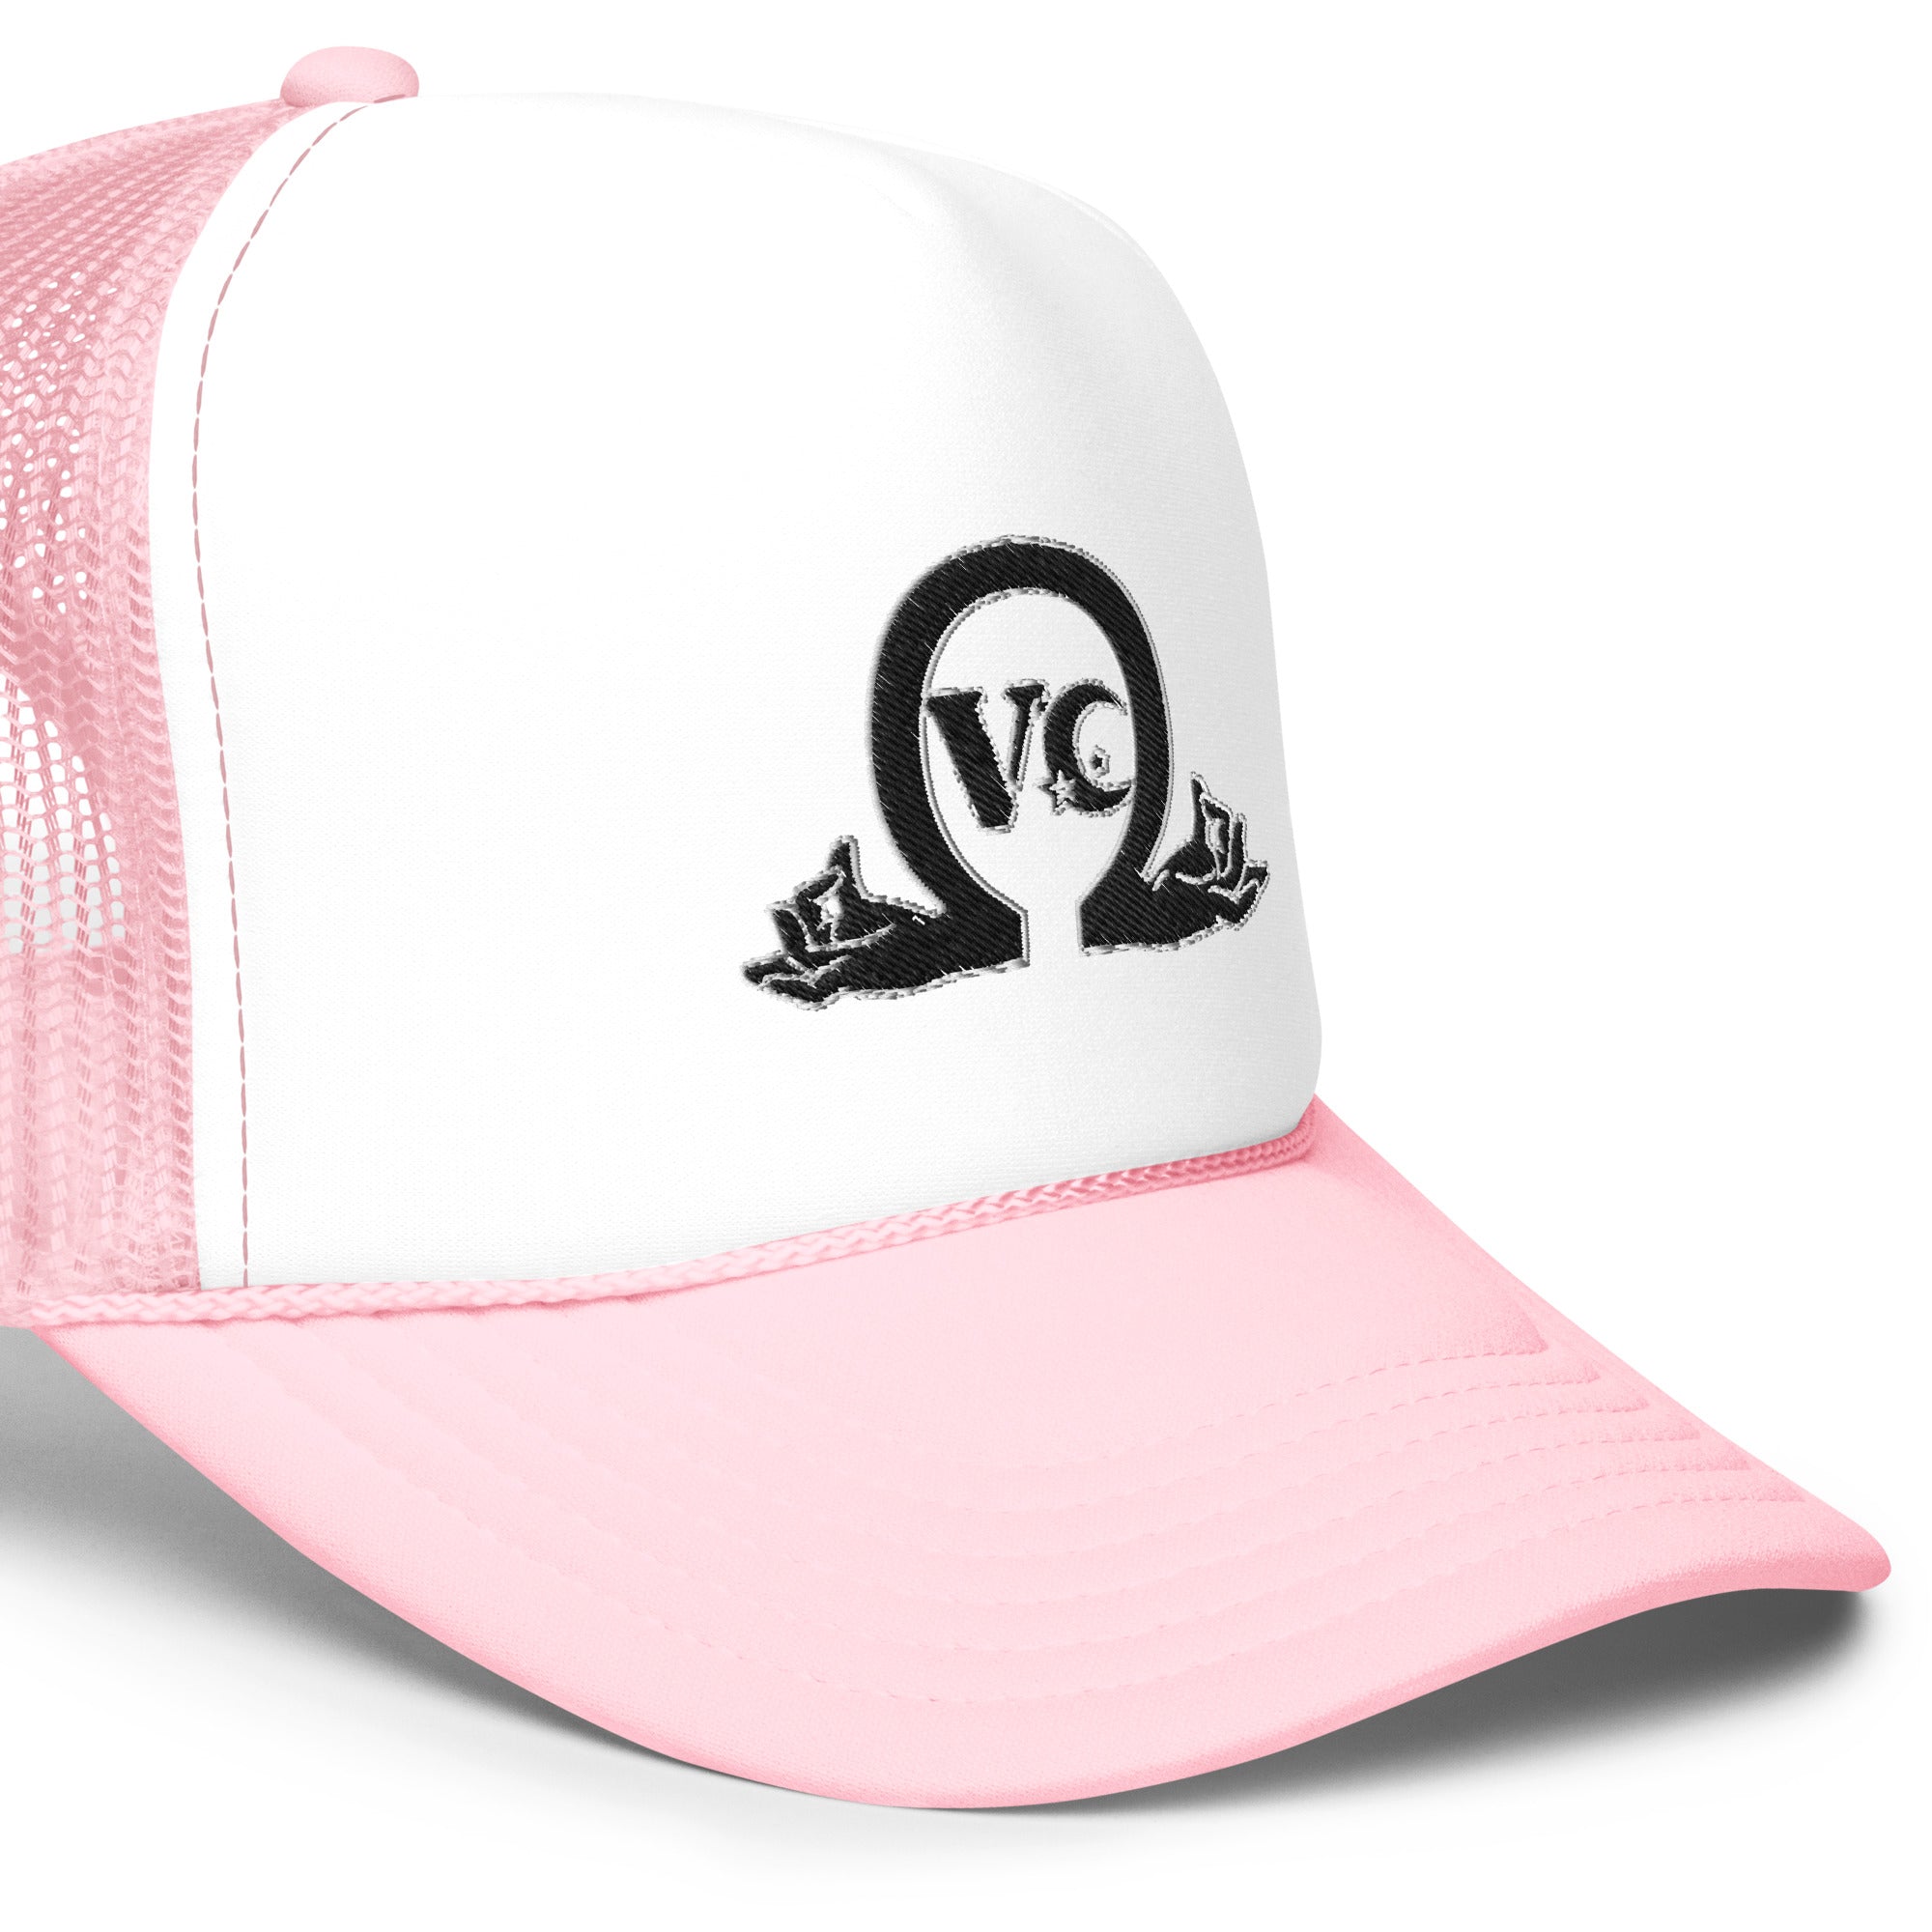 QueenVCulture Logo Foam trucker hat